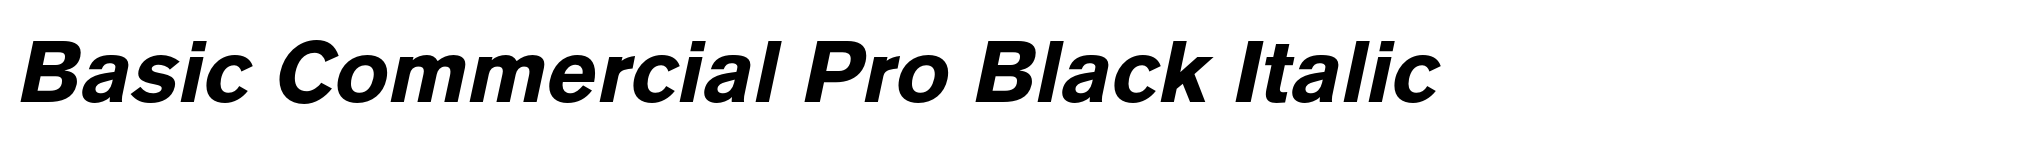 Basic Commercial Pro Black Italic image